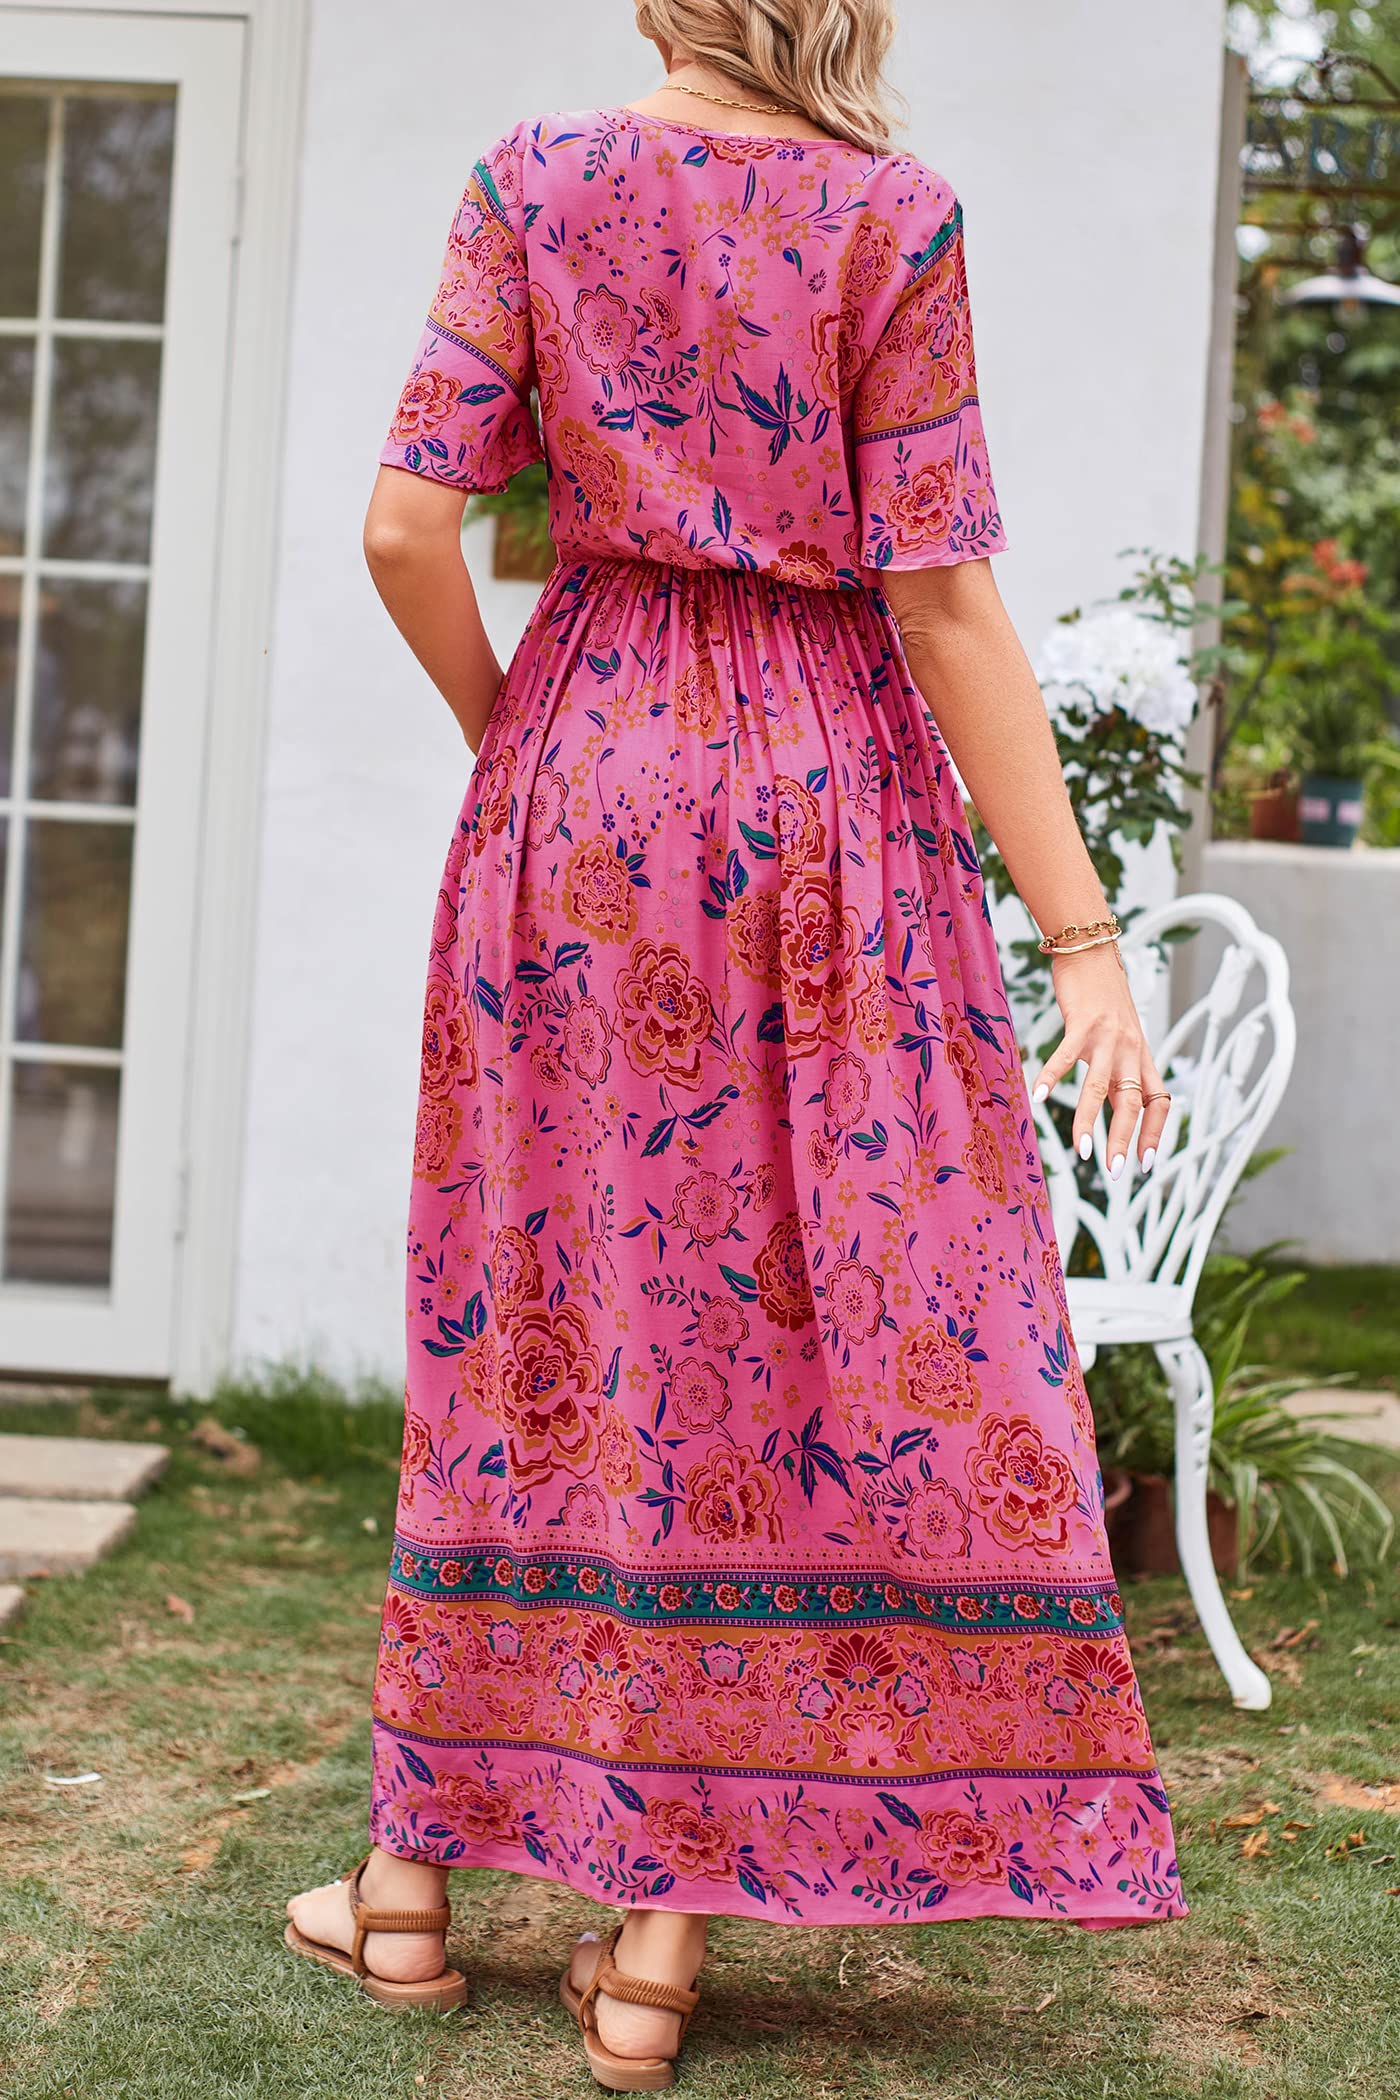 PRETTYGARDEN Women's Casual Summer Boho Floral Print Dress V Neck Short Sleeve High Waist Long Maxi Beach Dresses